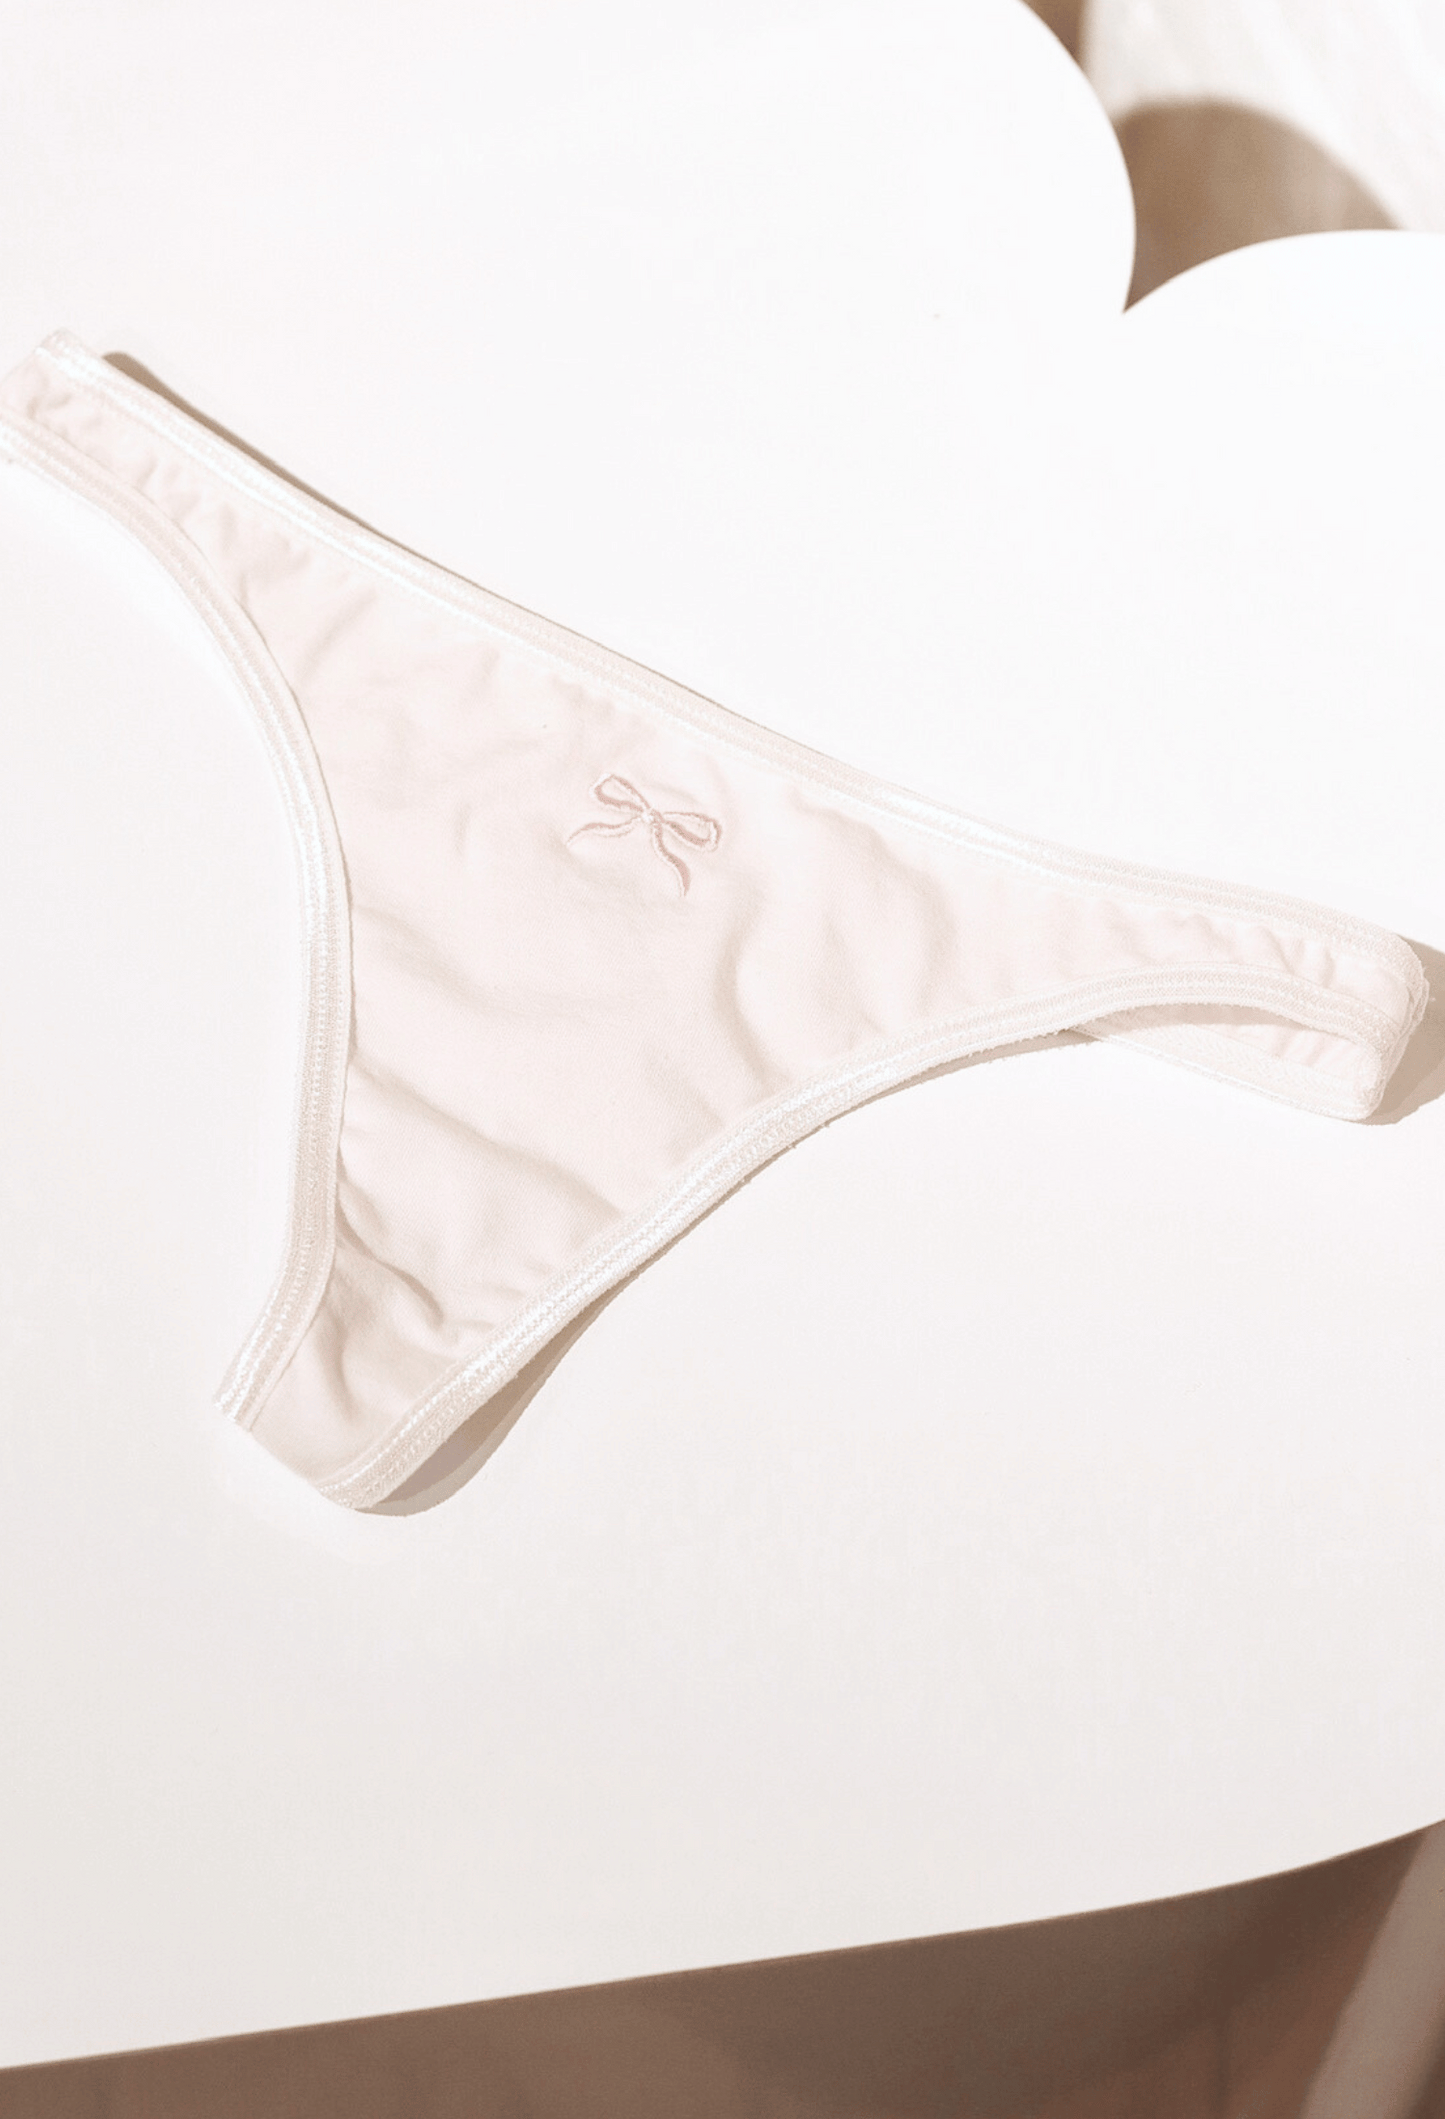 Custom Photo Upload Thong - Basic White Thong Underwear